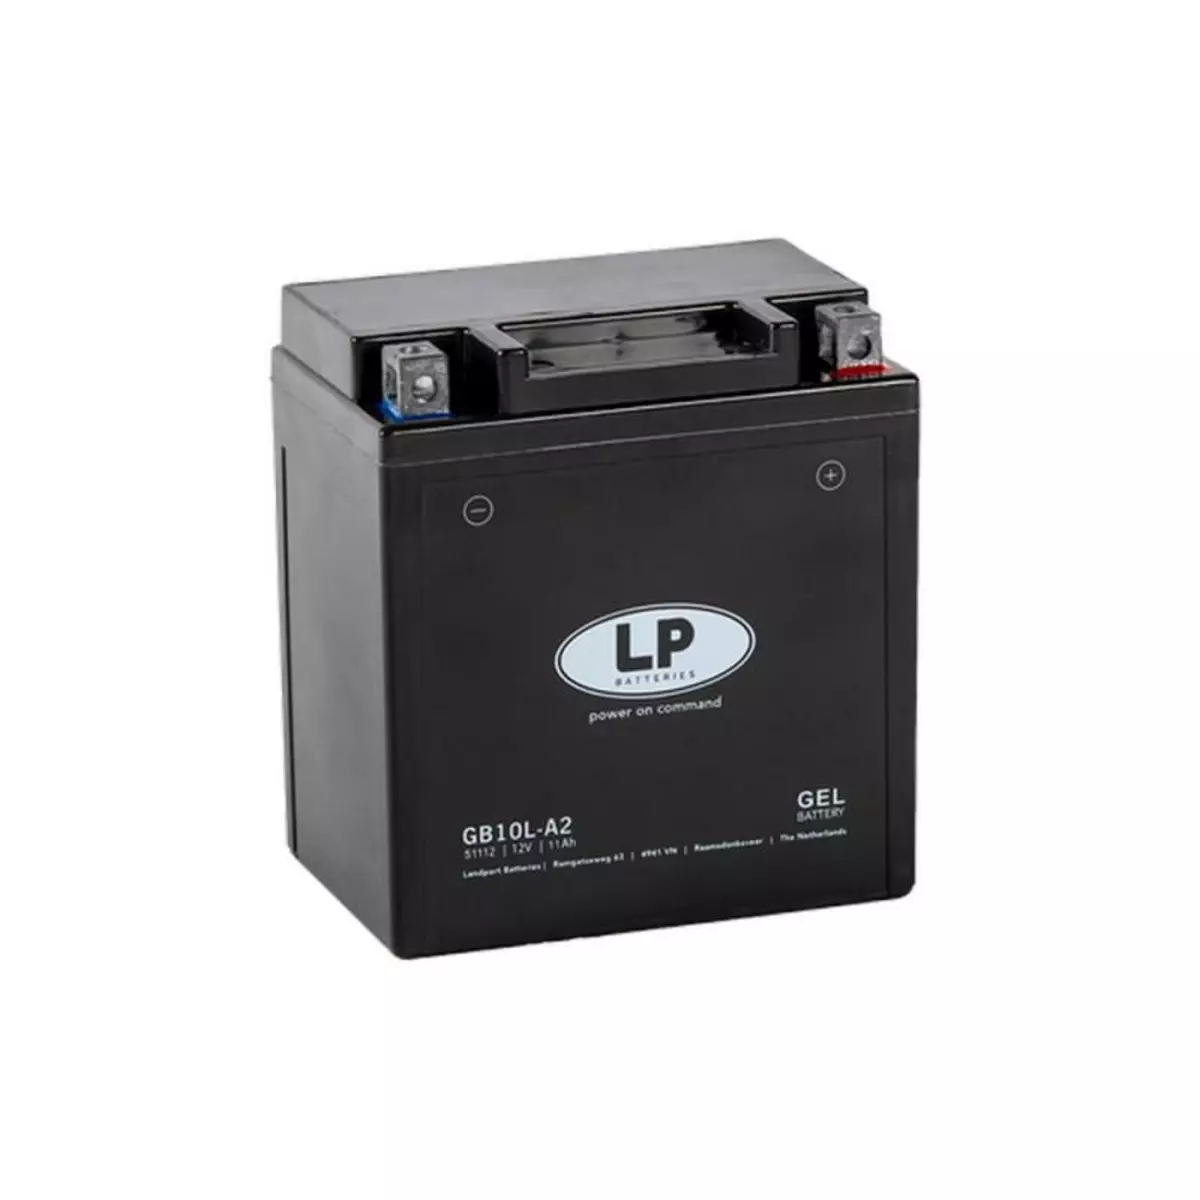  Batterie moto Landport LP GEL GB10L-A2 YB10L-A2 12v 11ah 170A